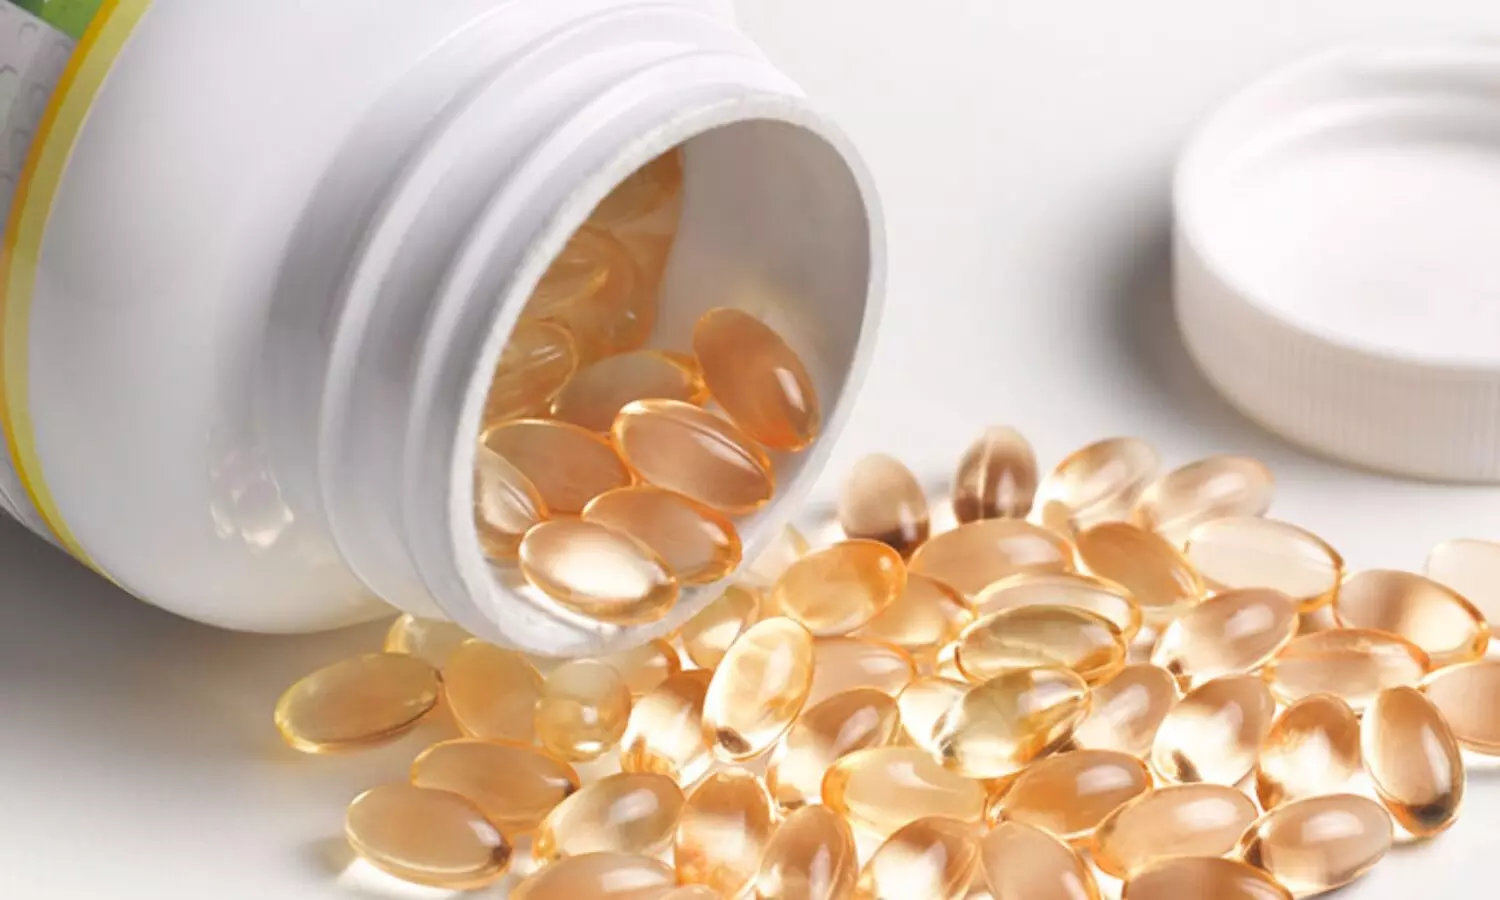 Higher-than-standard vitamin D not beneficial for child neurodevelopment: JAMA